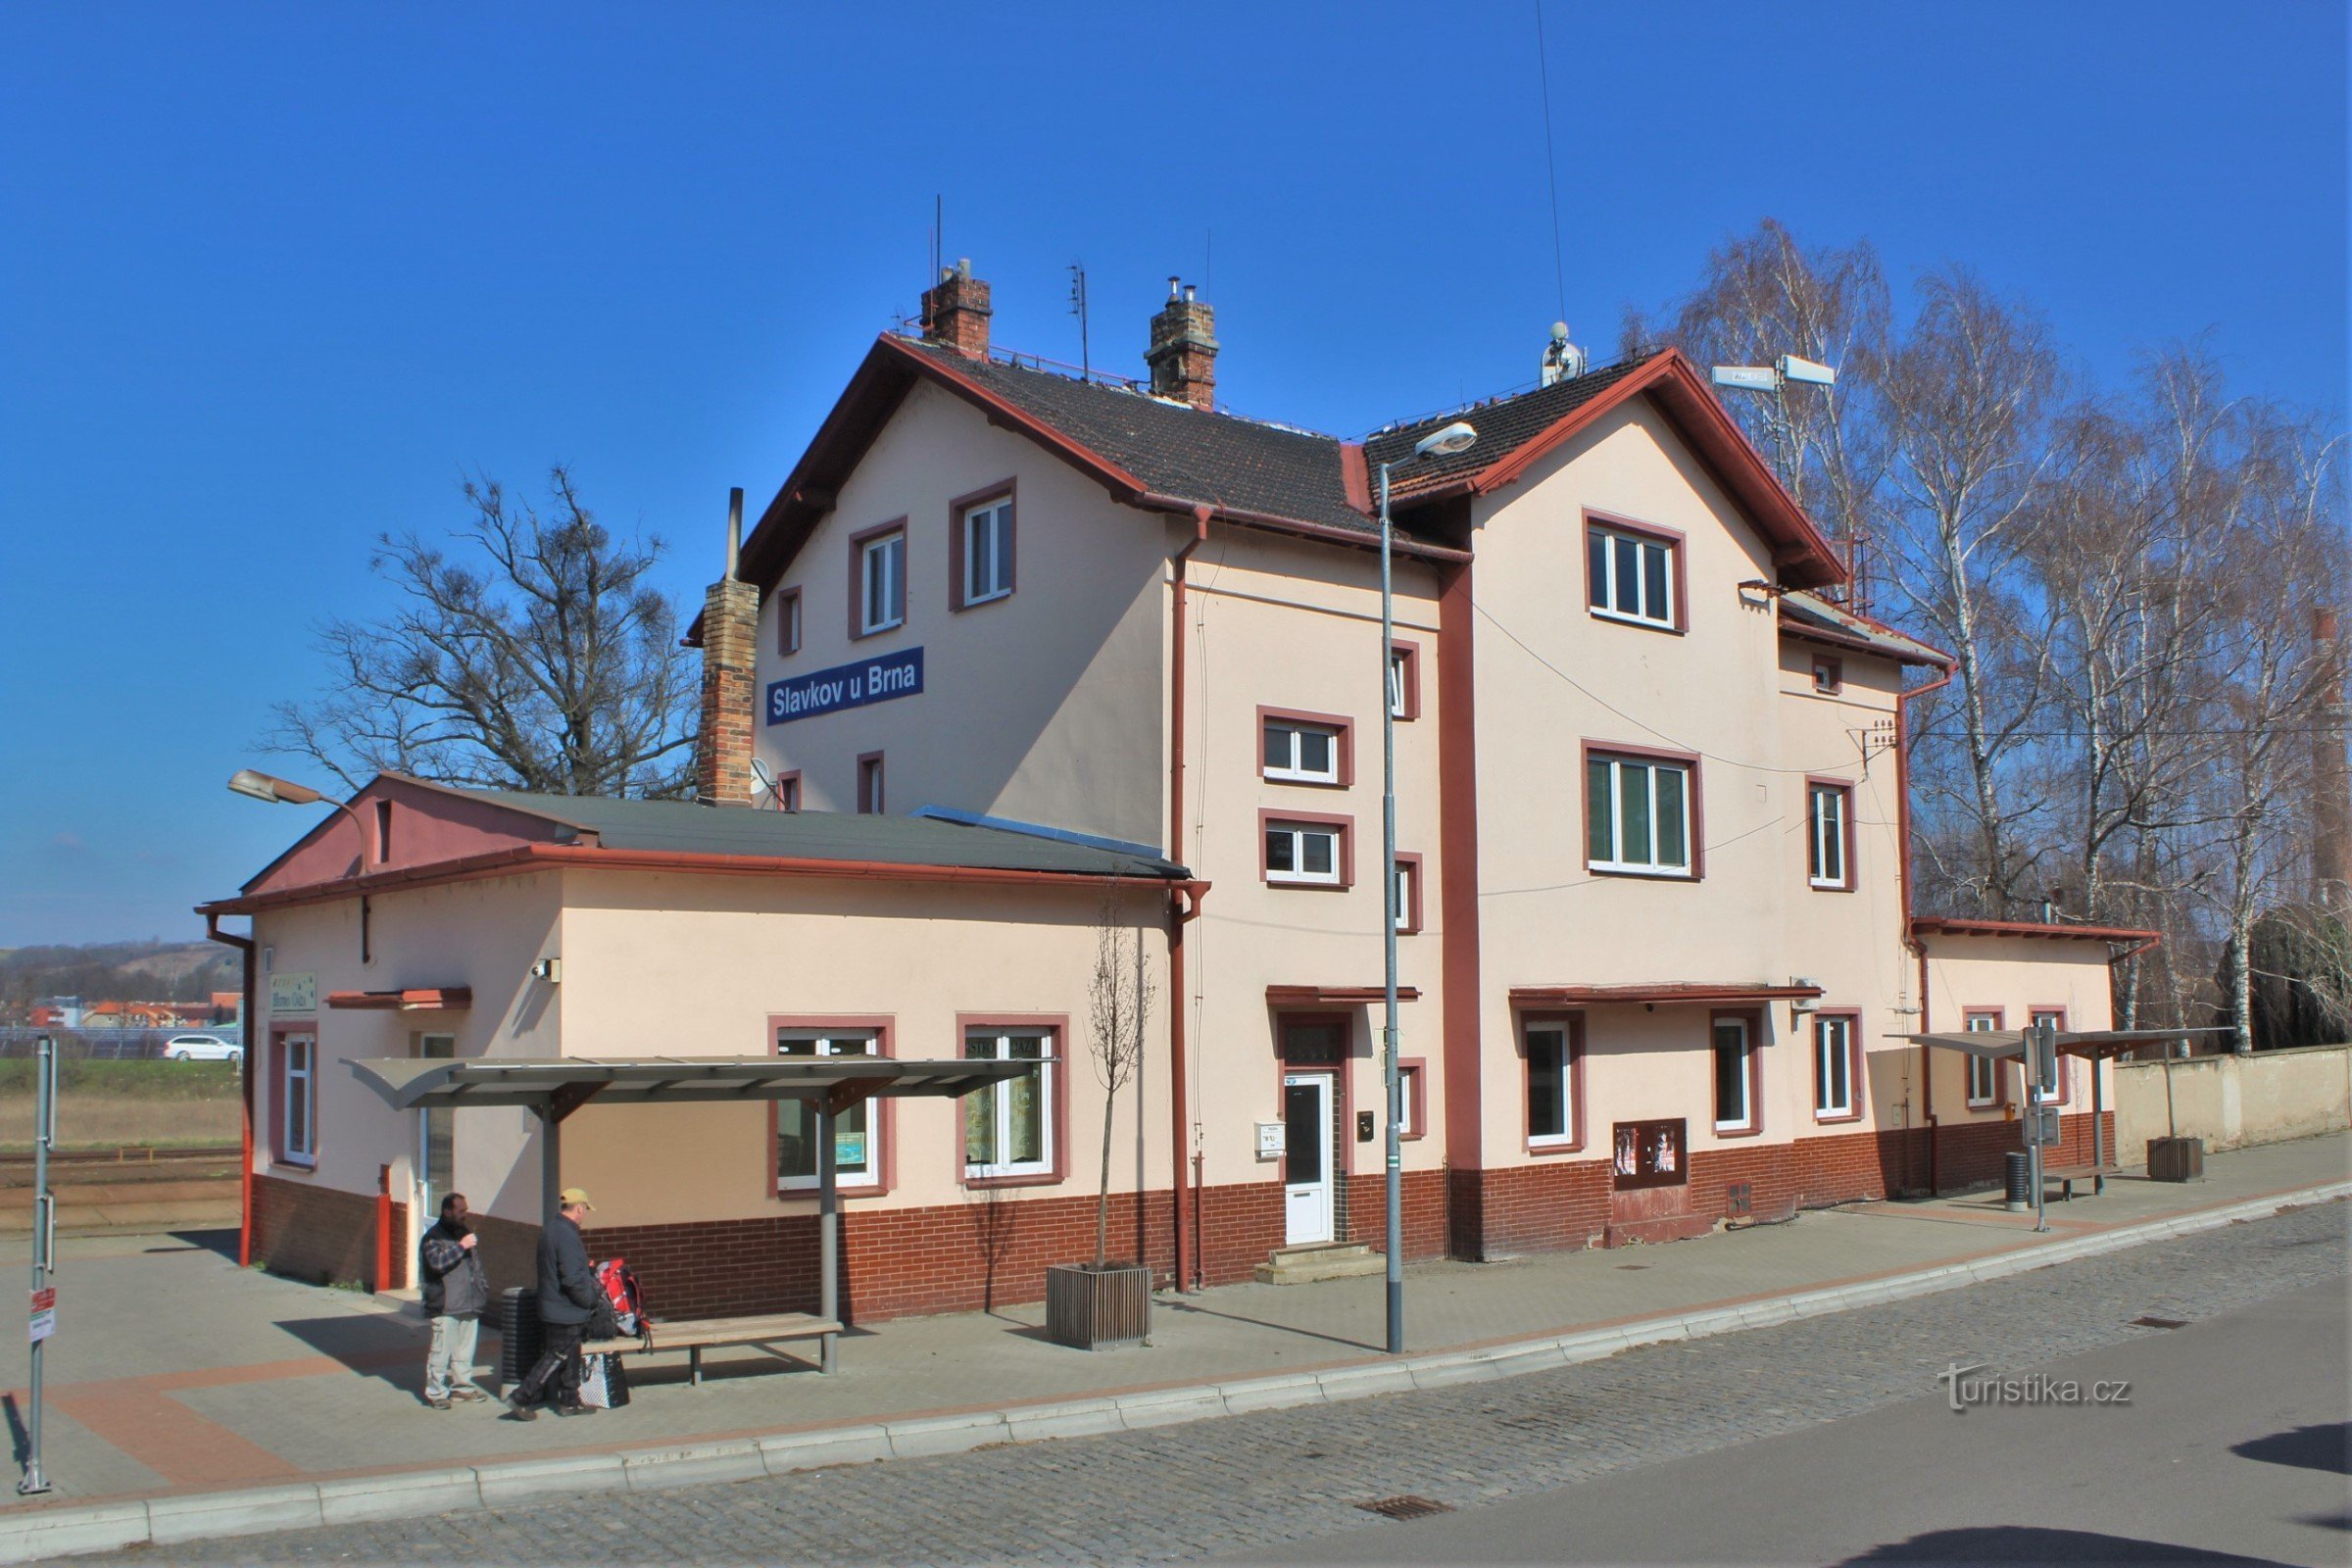 Állomásépület a Brno melletti Slavkovban